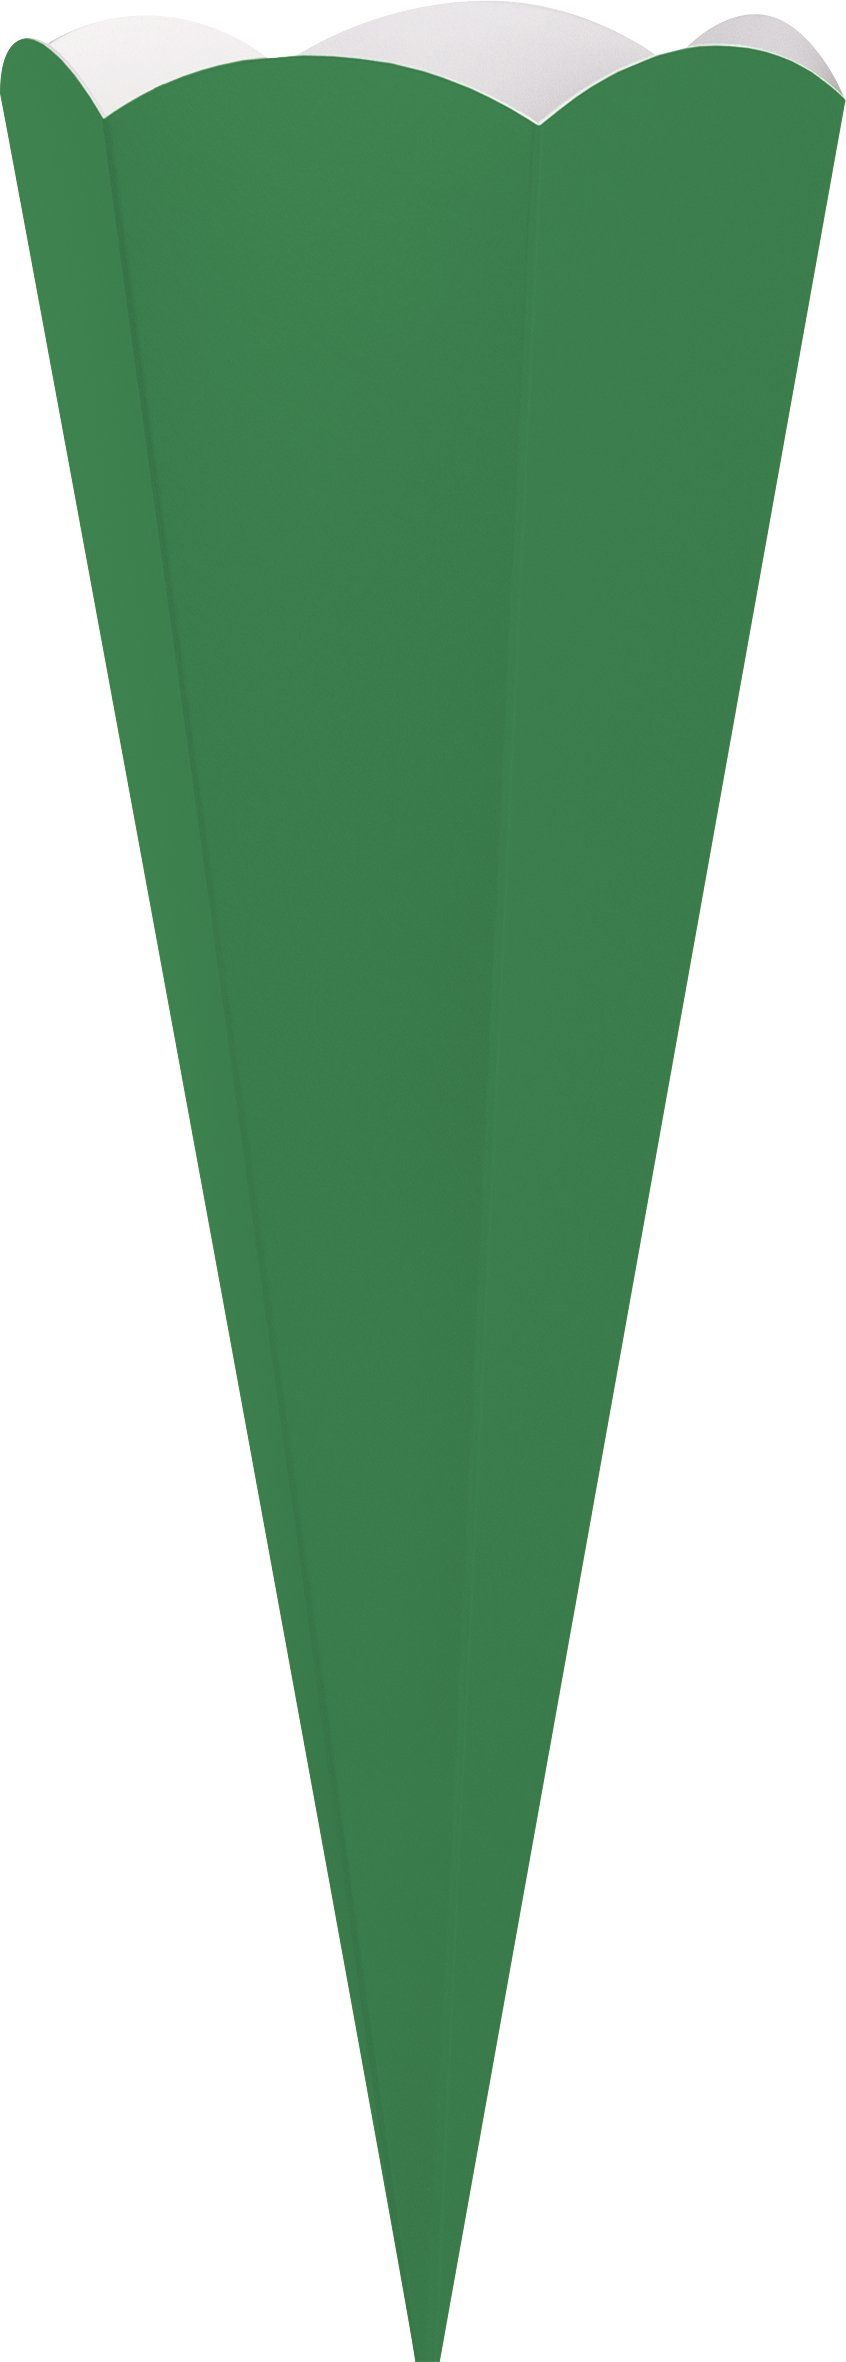 Geschwister-Schultüten-Zuschnitt, 41 Schultüte cm Heyda Grün